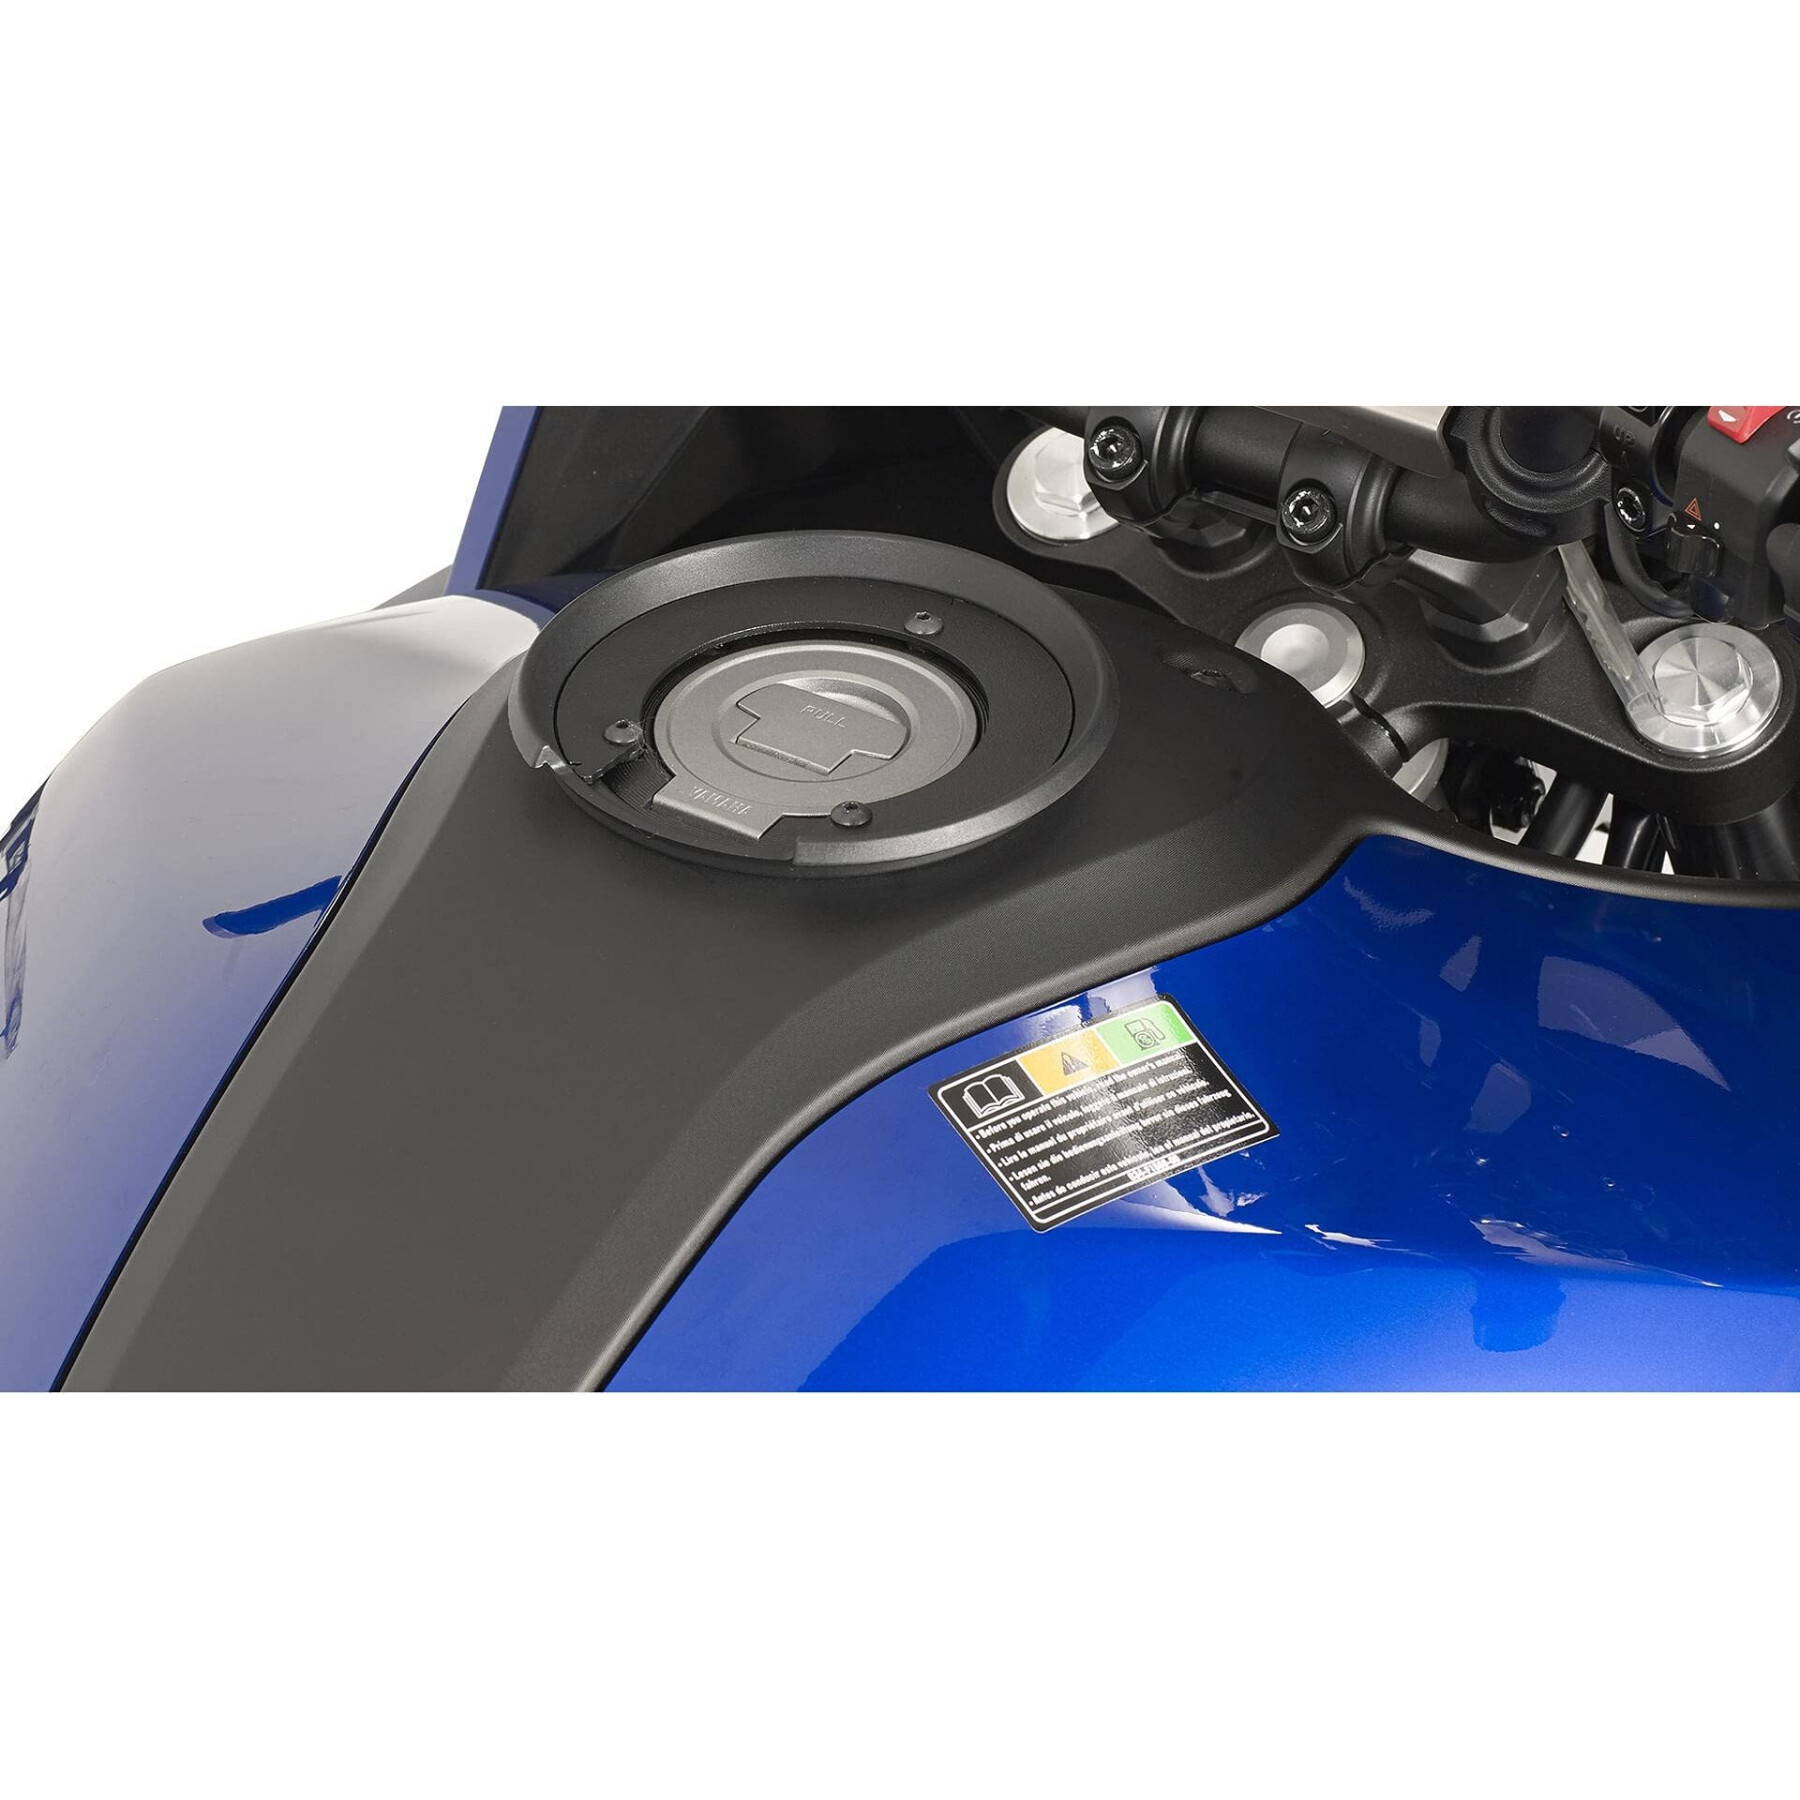 Bague réservoir moto IXS quick-lock TF16